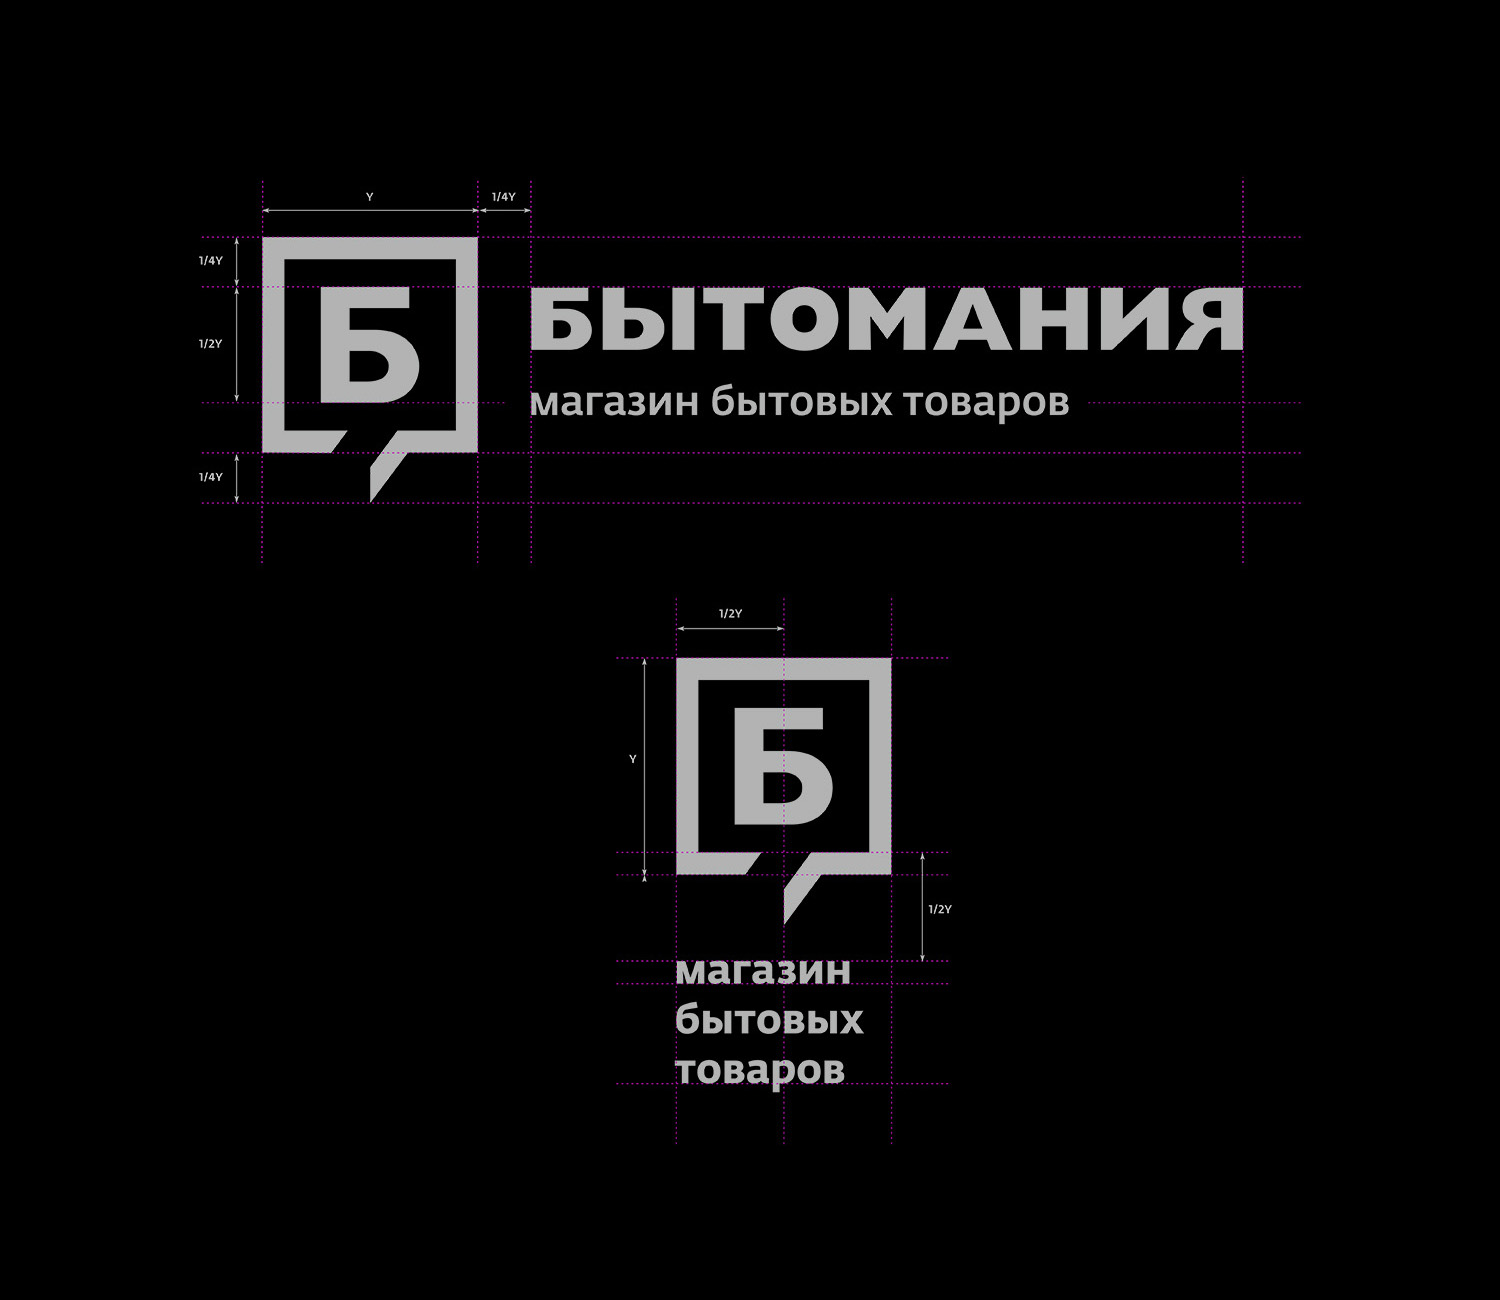 горизонтальная и вертикальная версии логотипа